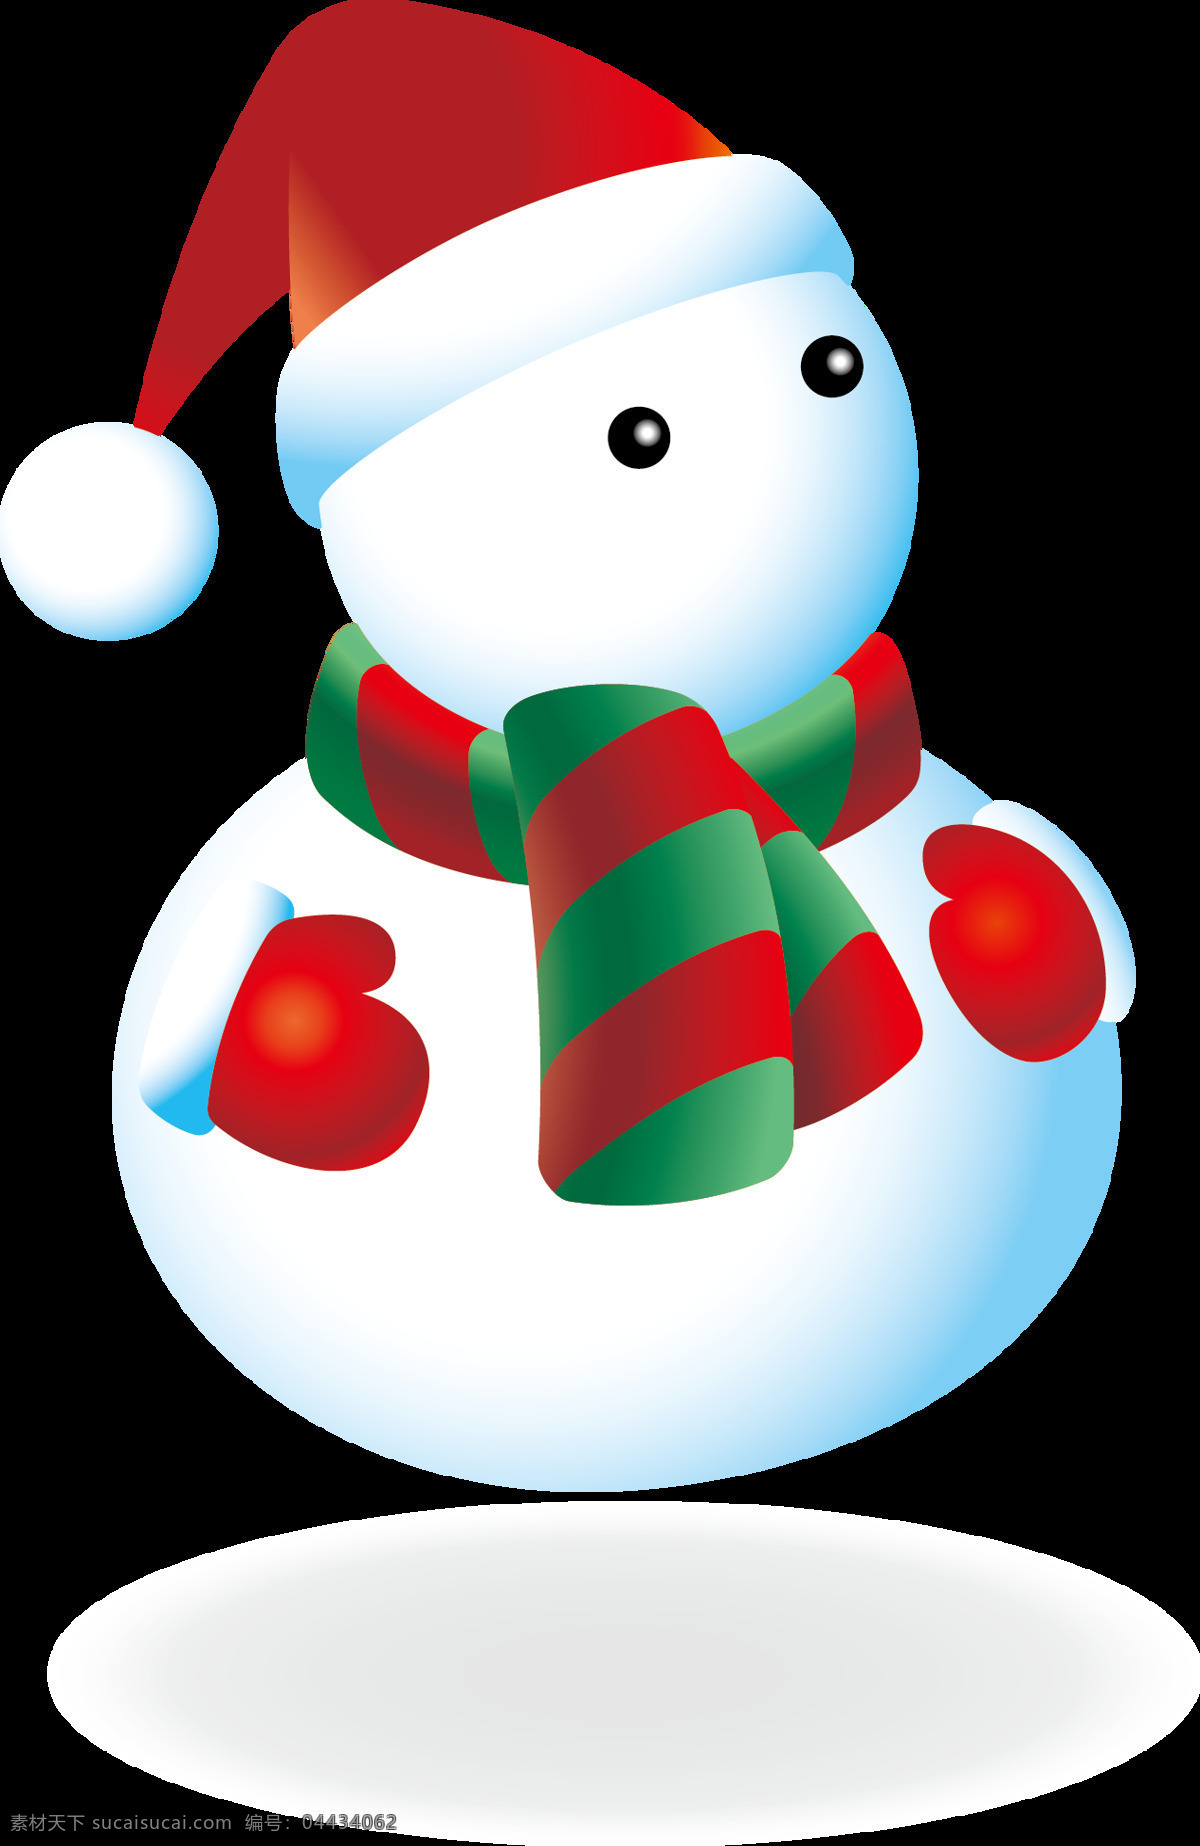 可爱 卡通 圣诞 雪人 元素 christmas merry 设计素材 圣诞png 圣诞节 圣诞节装饰 圣诞素材 圣诞雪人 圣诞元素下载 圣诞装扮 雪人元素